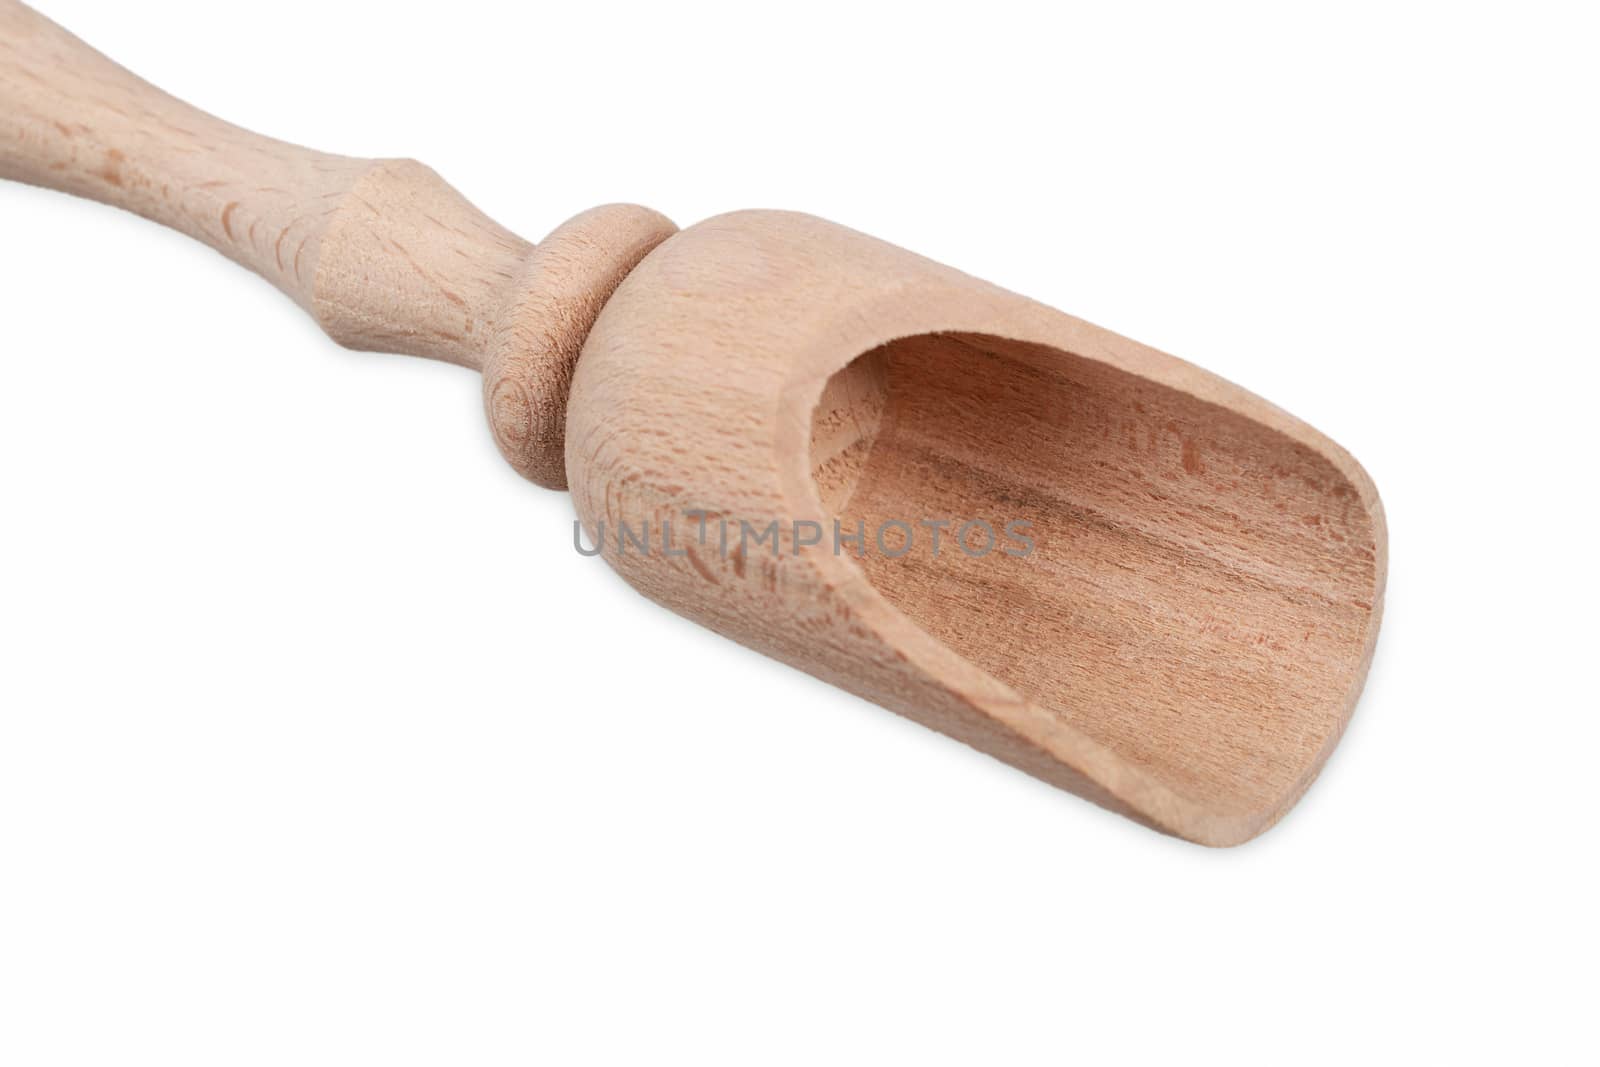 Wooden scoop by marynamyshkovska